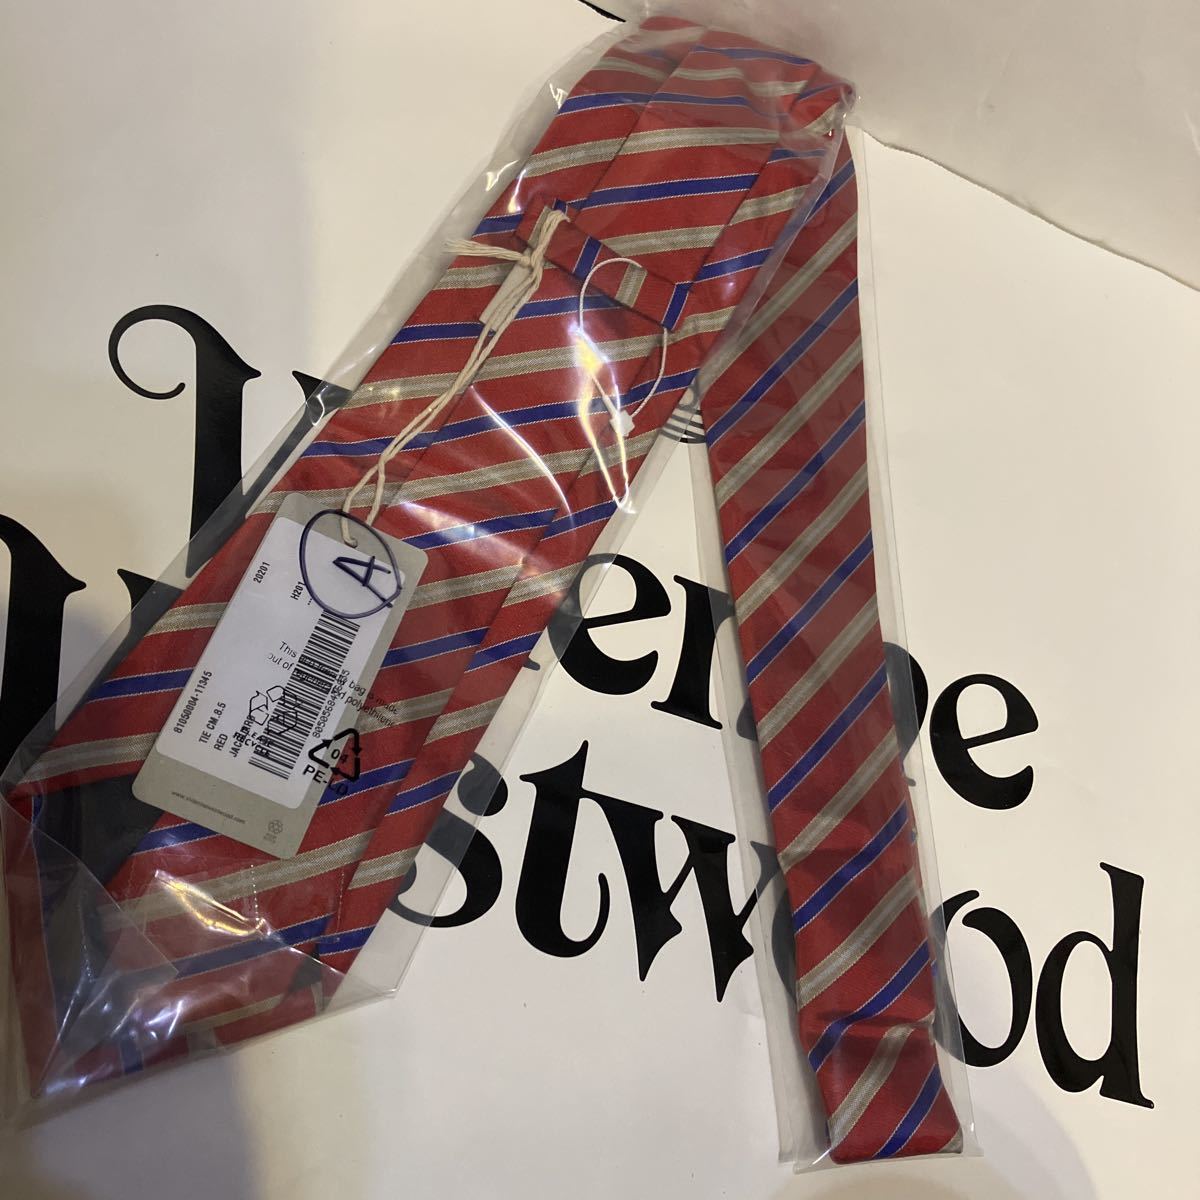  стоимость доставки включена  ● новый товар ●...19800  йен Vivienne Westwood  Италия  пр-во    галстук   красный  синий A ...100% ...8.5㎝ ... талия  дерево   ...